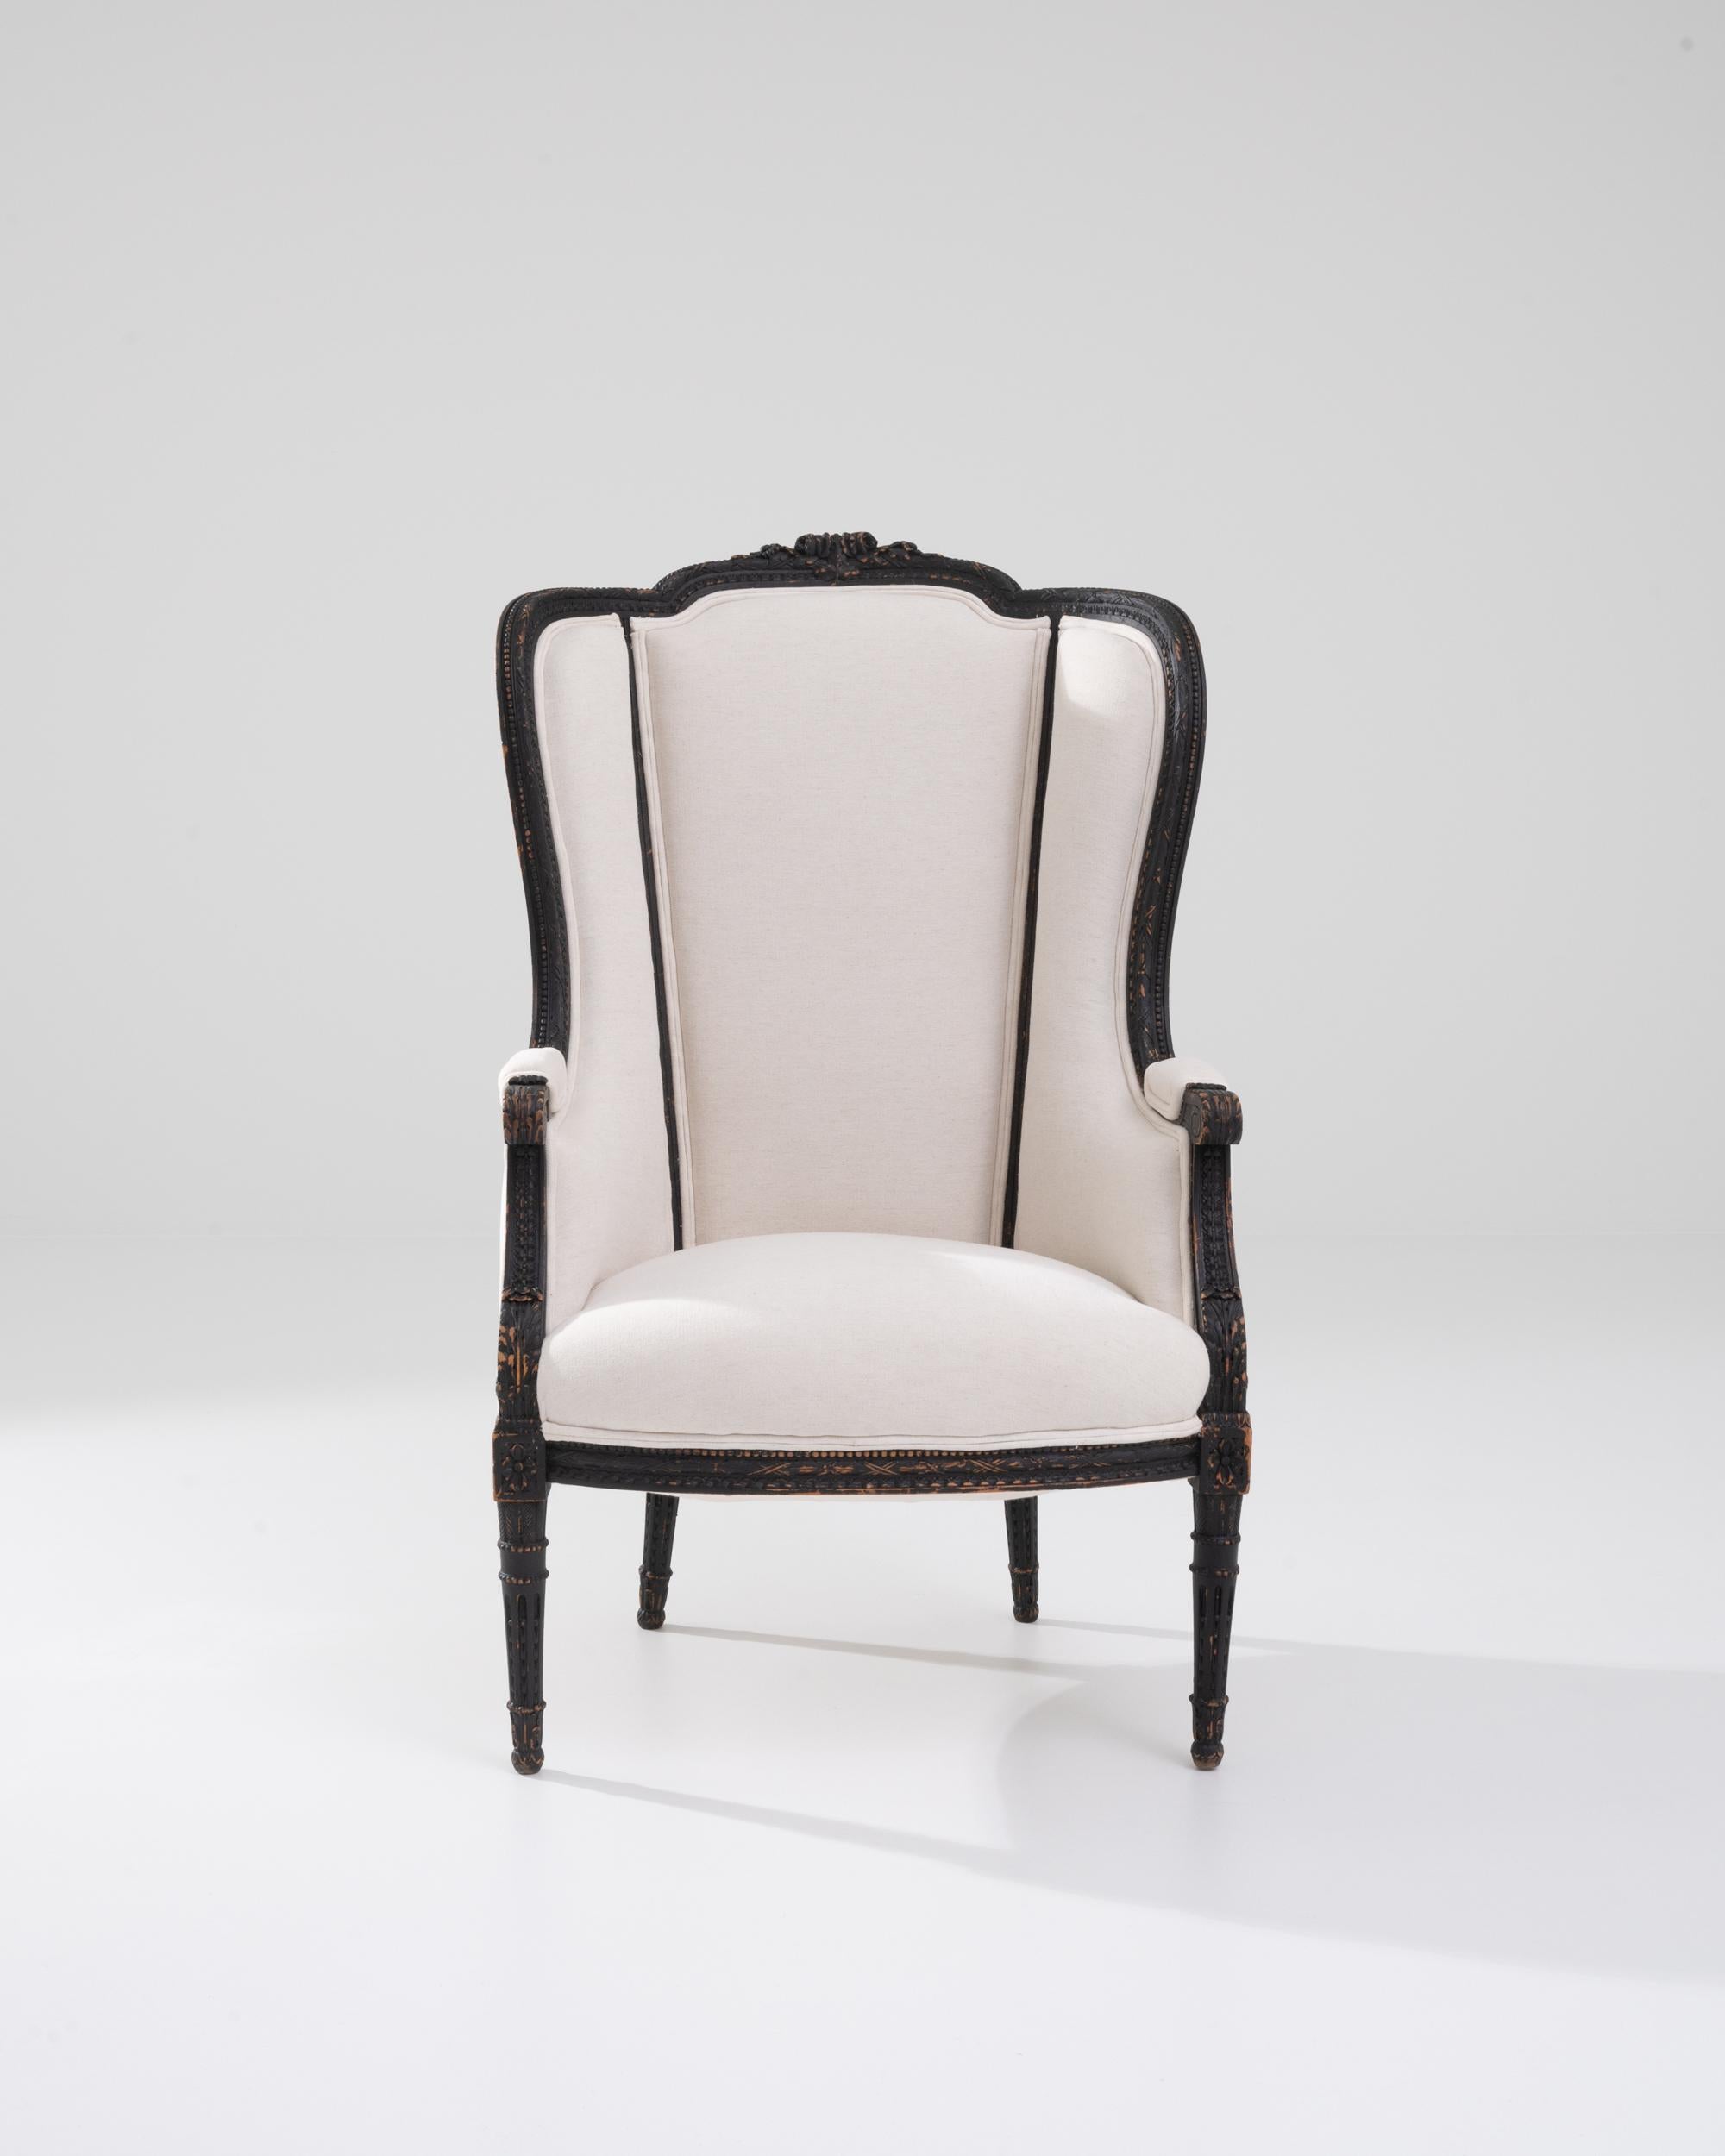 Fauteuil en bois tapissé créé en France au 20e siècle. Ce fauteuil à dossier haut respire à la fois l'élégance d'antan et une attitude chaleureuse et accessible. La fraîcheur du tissu blanc cassé qui habille les coussins contraste agréablement avec